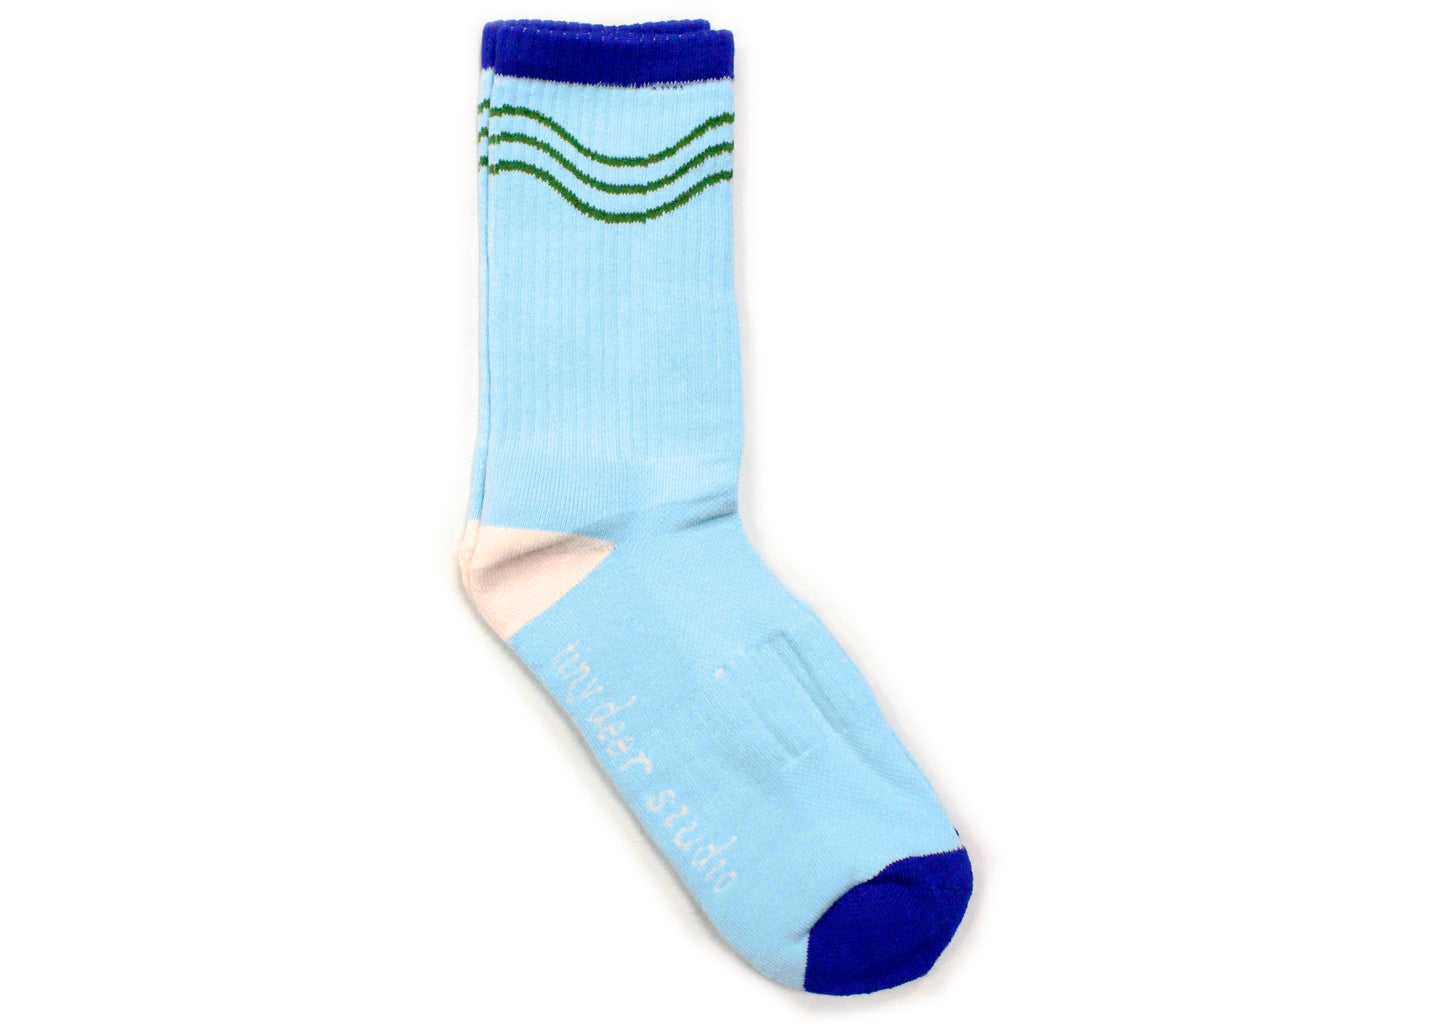 Athletic Waves Socks in Baby Blue